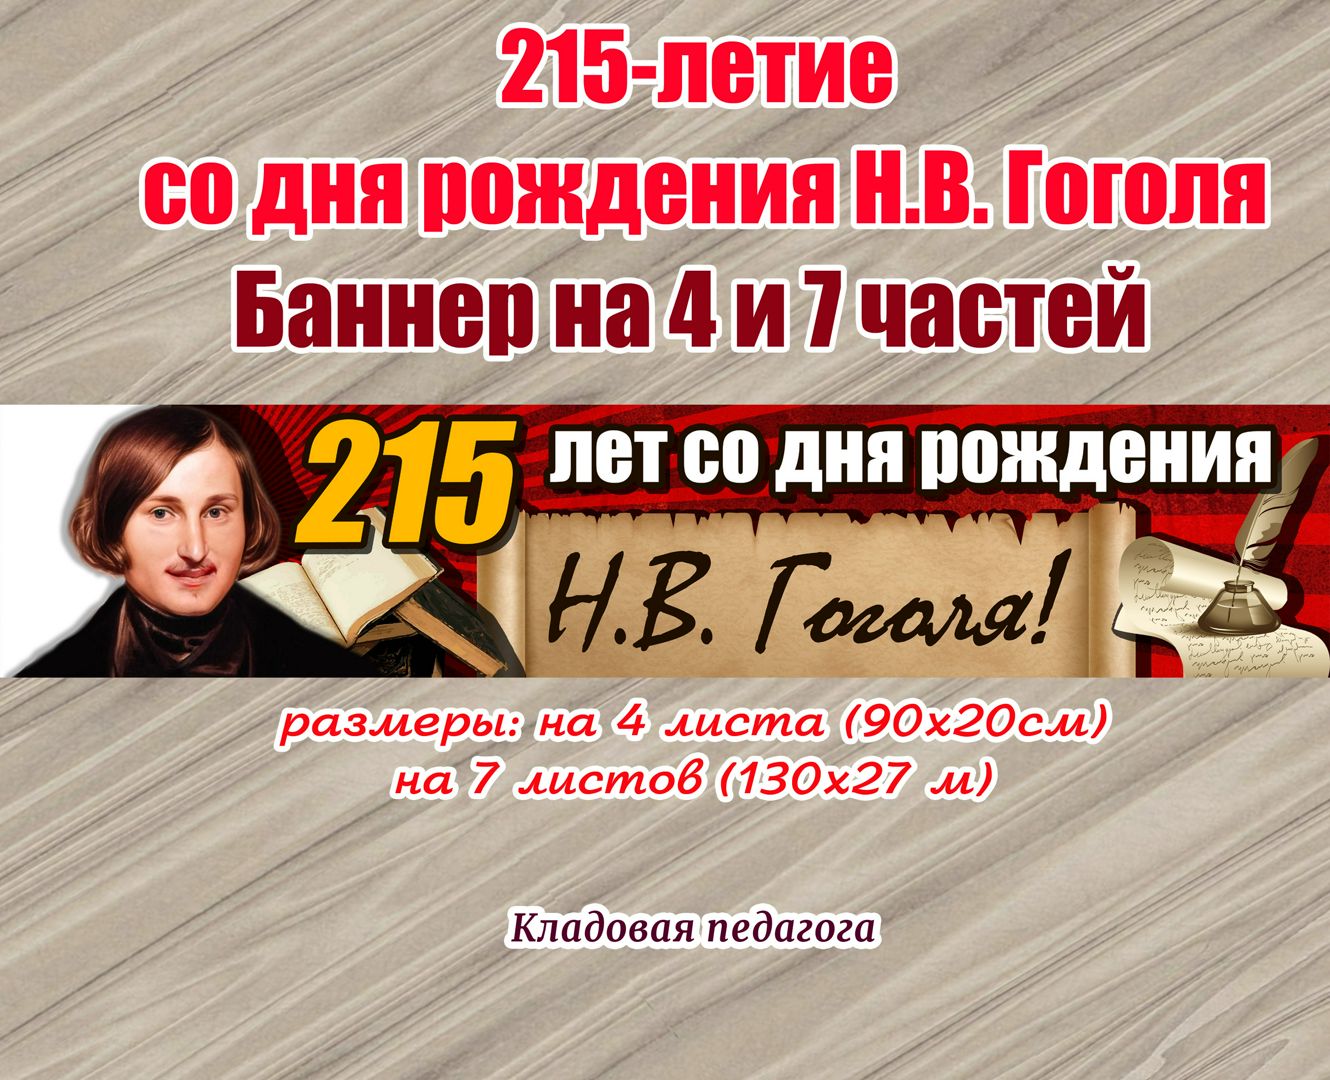 215-летие со дня рождения Н.В. Гоголя Баннер на 4 и 7 листов А4